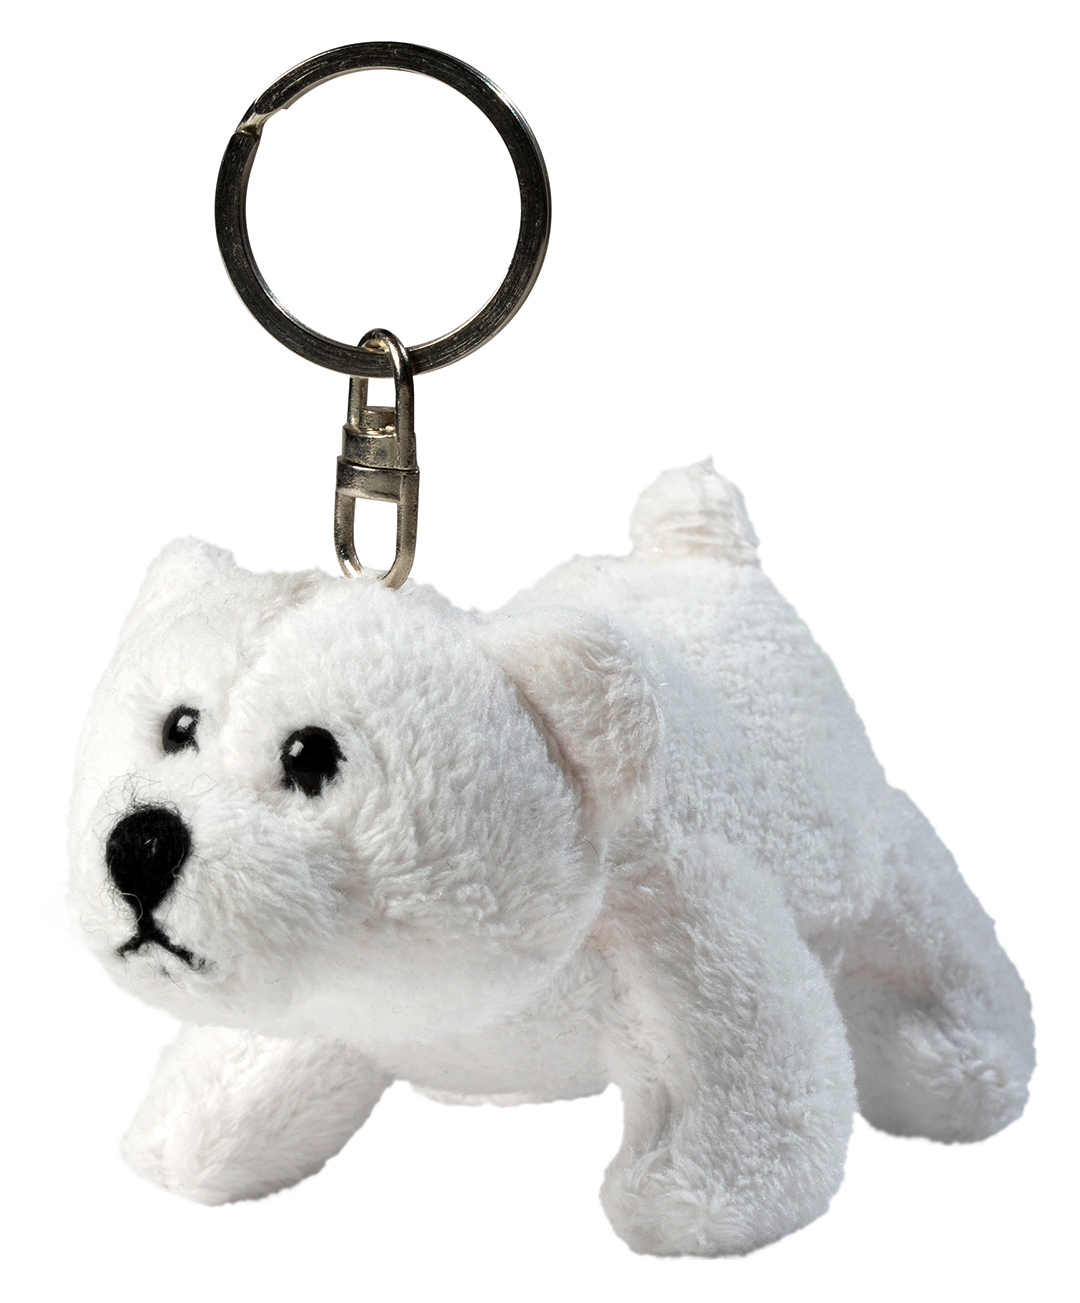 plush polar bear Freddy with key chain